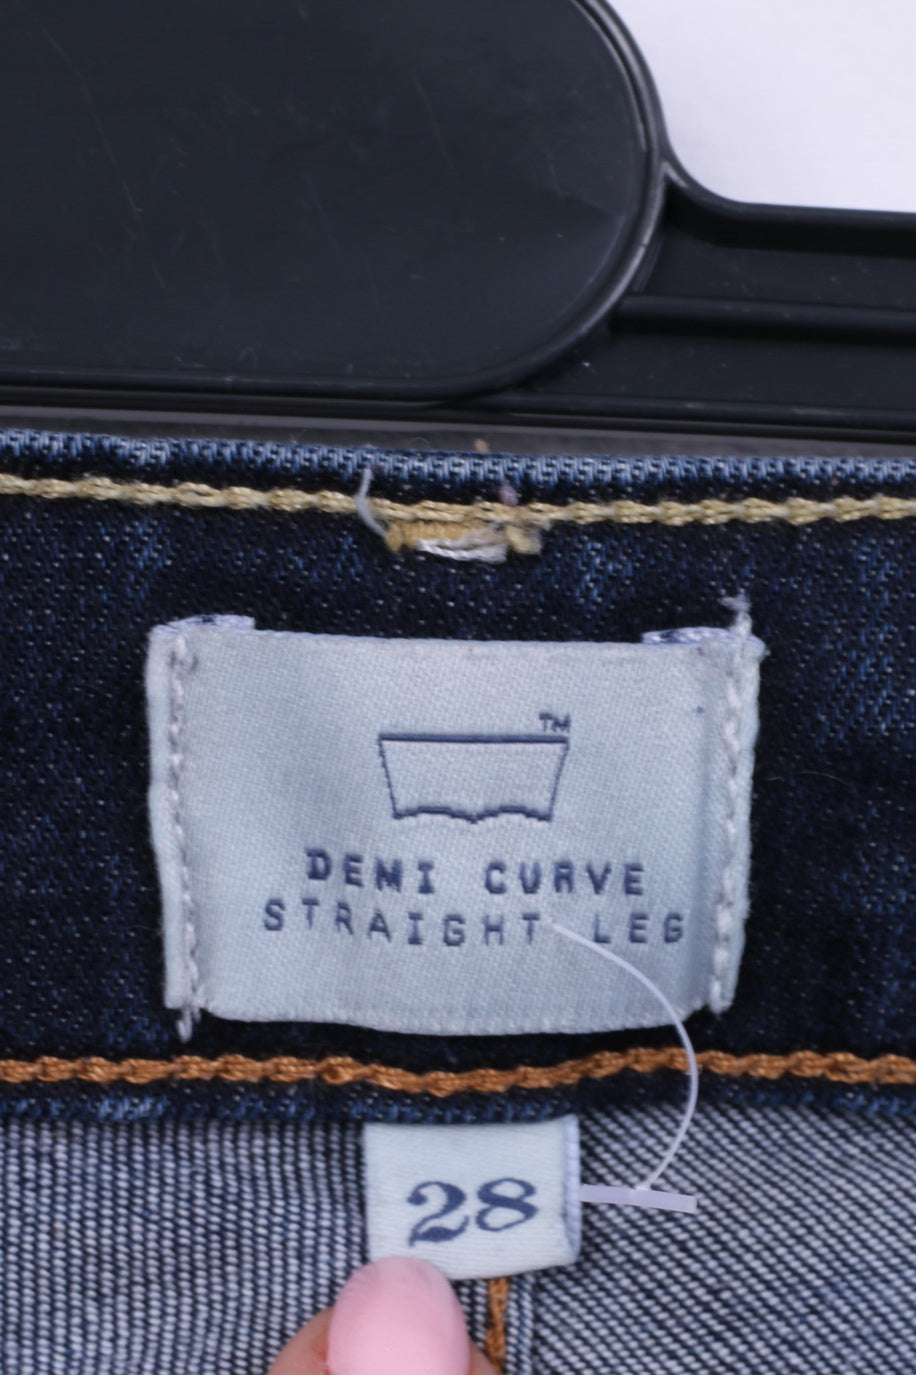 Levis San Francisco Pantalon 28 Femme Denim Jeans Bleu Marine Denim Curve Jambe Droite Coton